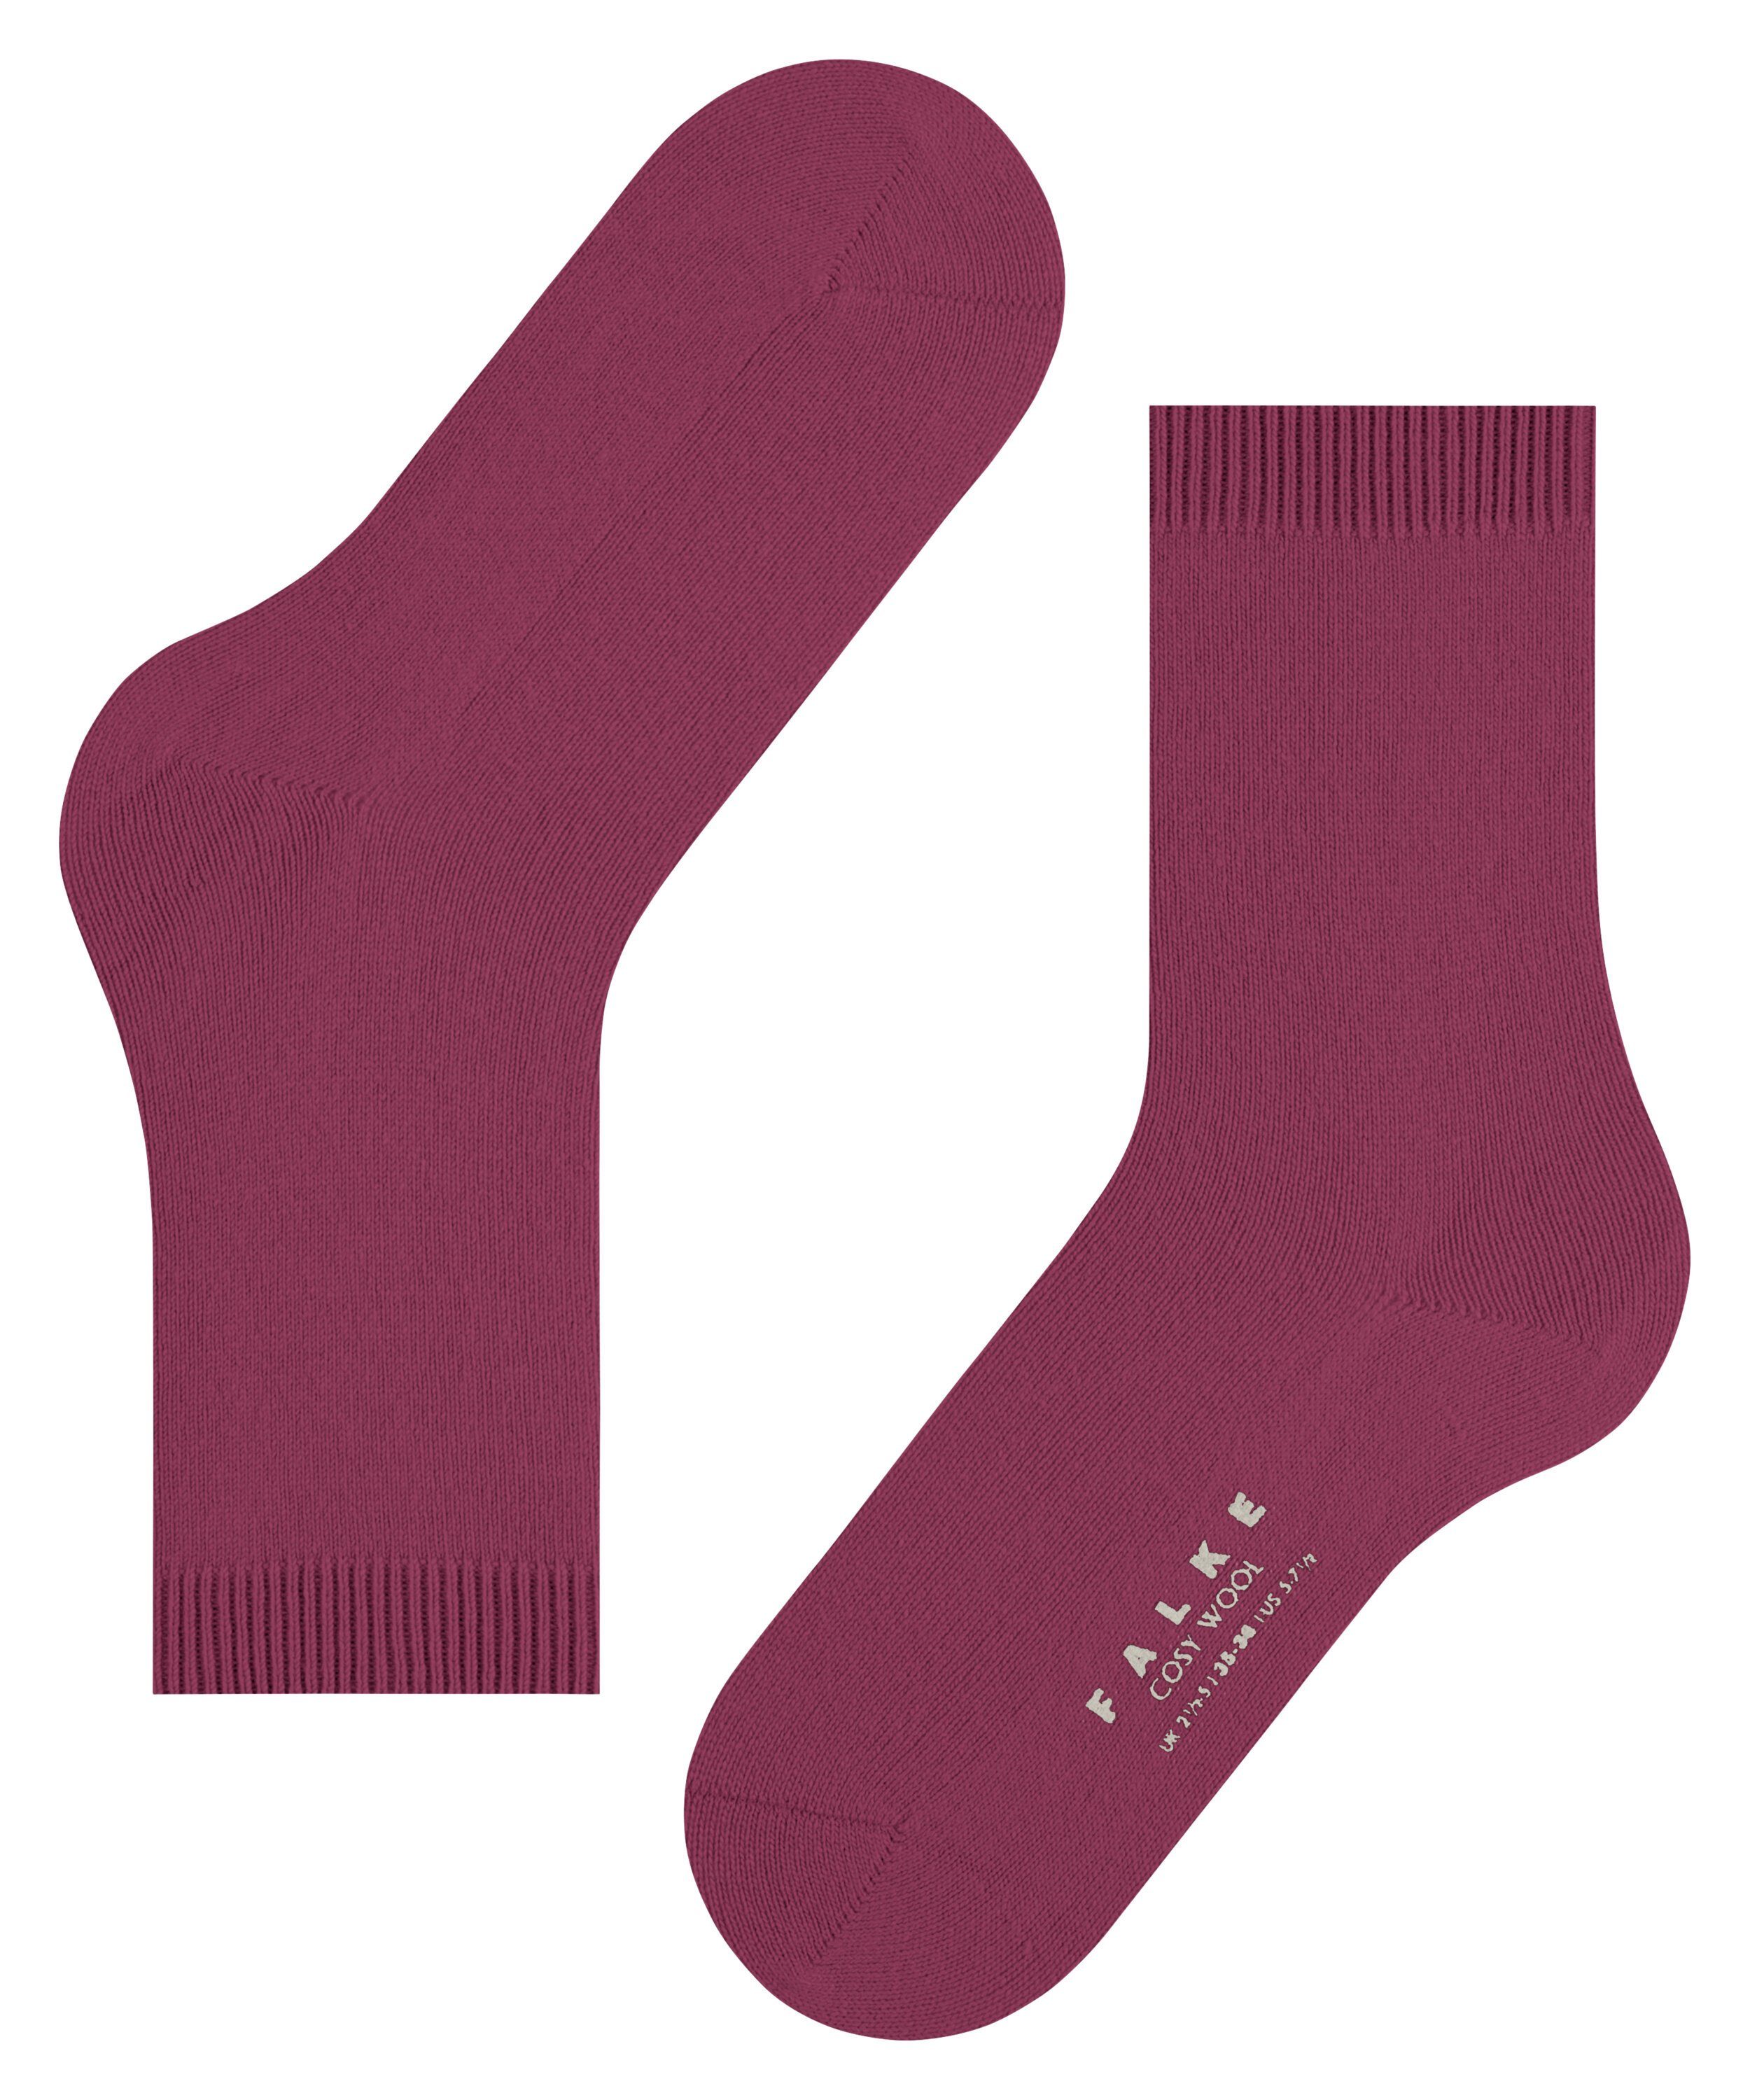 Cosy (8236) FALKE Socken Wool (1-Paar) plum red